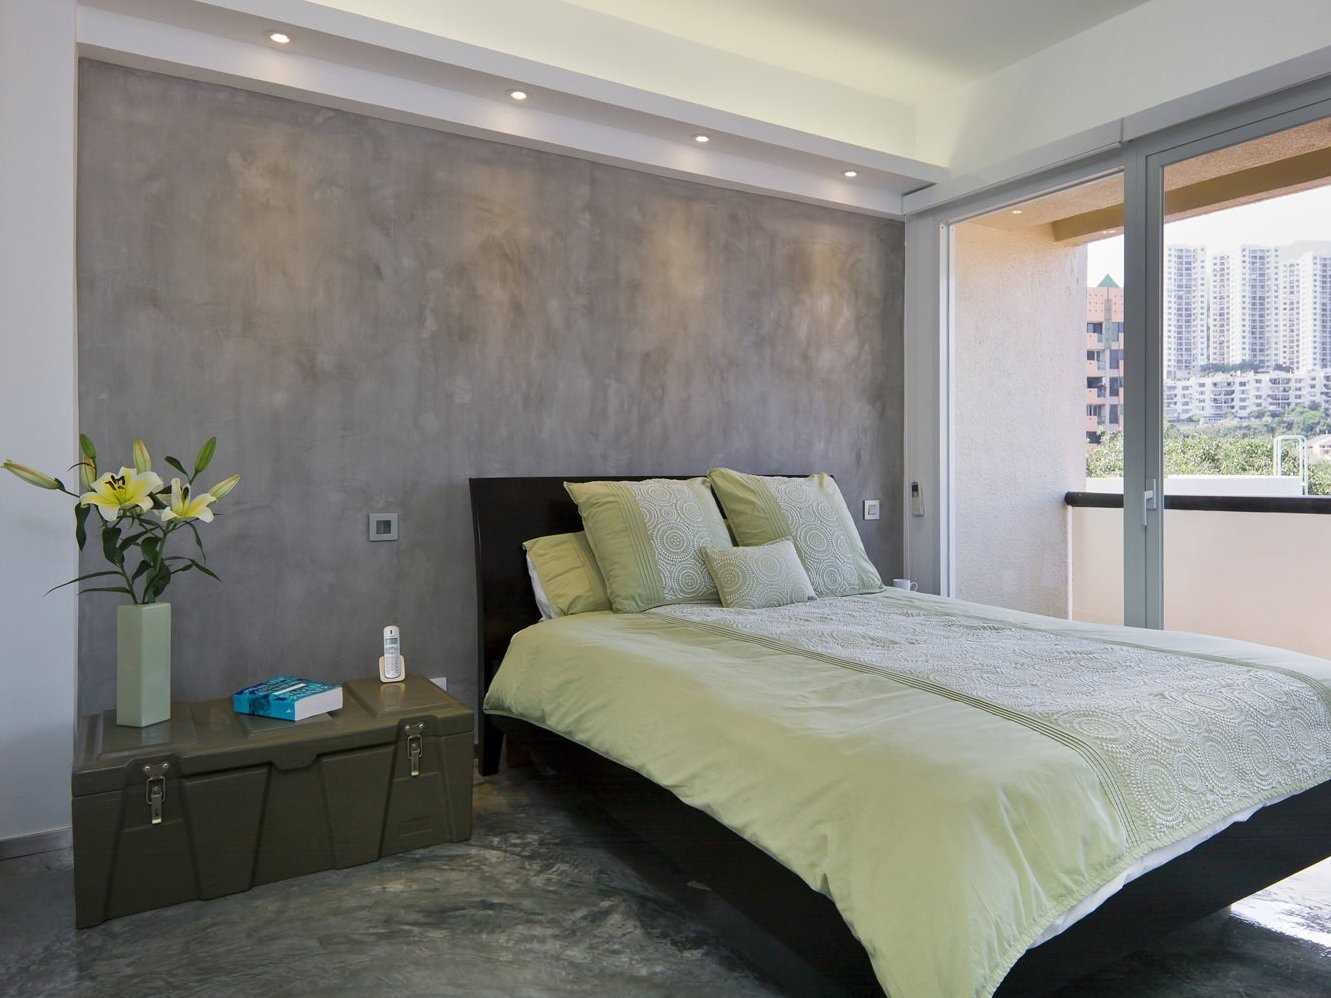 l'idée d'un beau plâtre décoratif dans la conception d'un appartement pour le béton